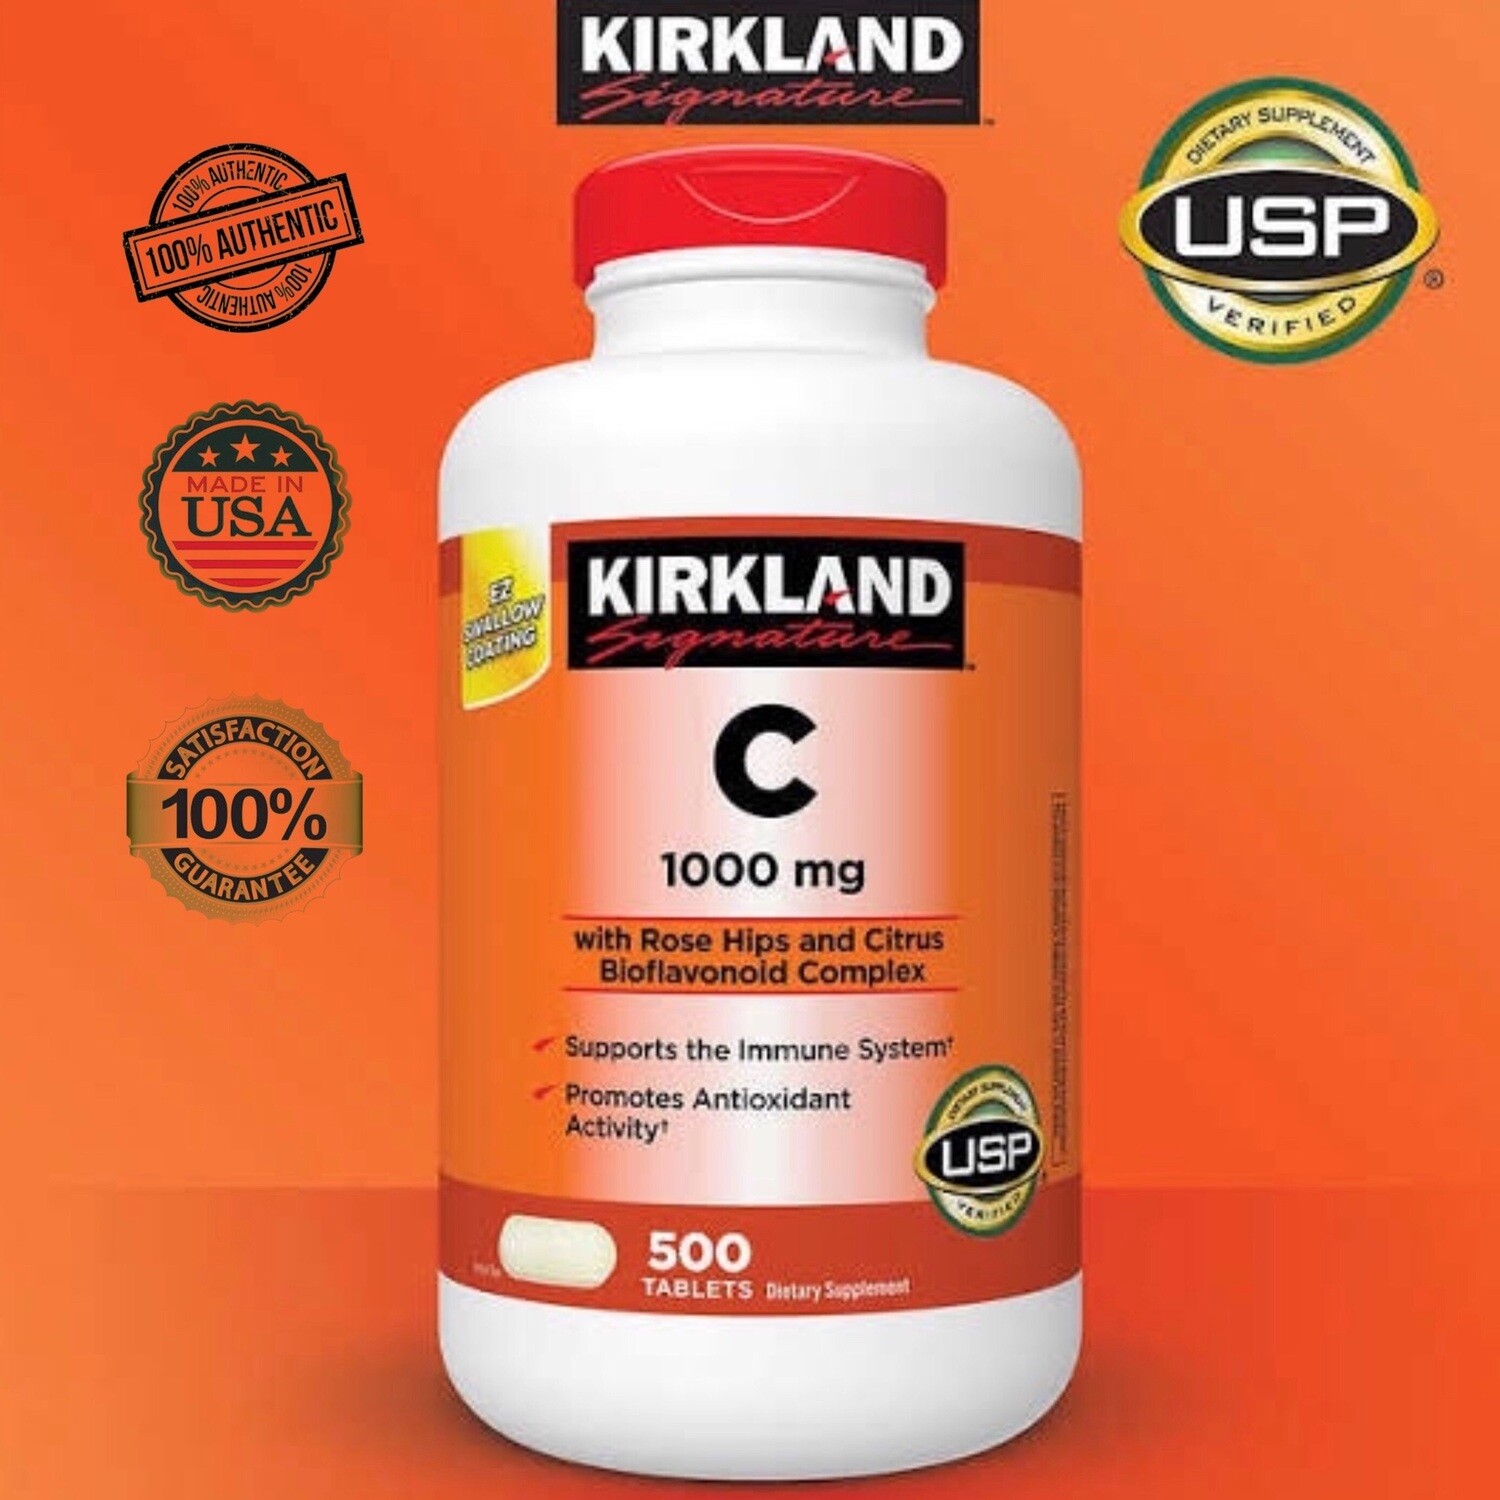 1 TABLET Kirkland Signature Vitamin C 1000mg - SOLD PER PIECE